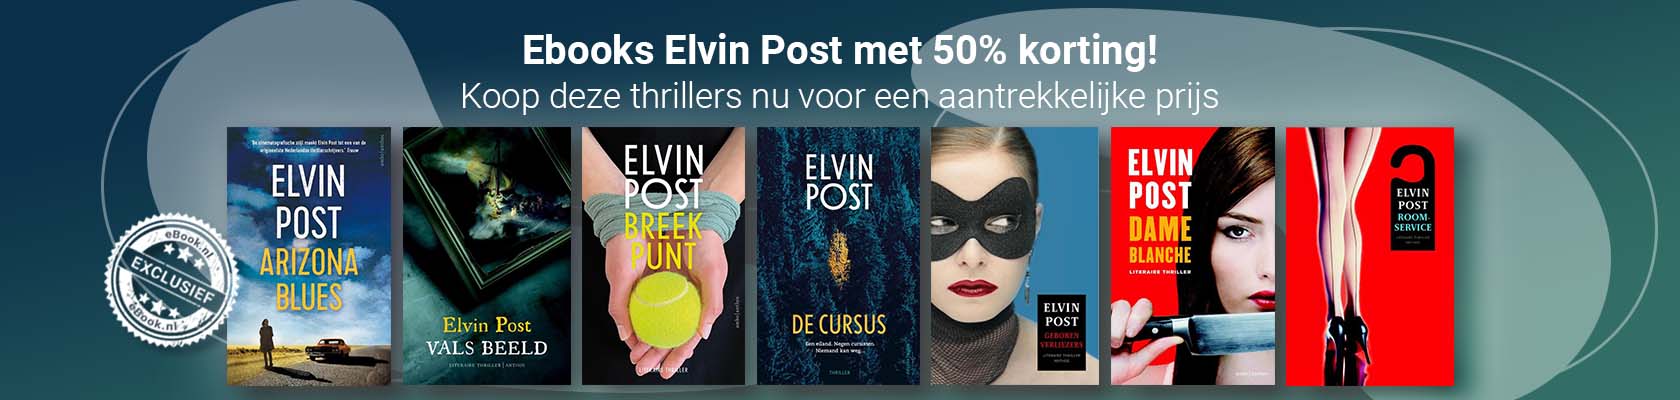 Ebooks Elvin Post met 50% korting!